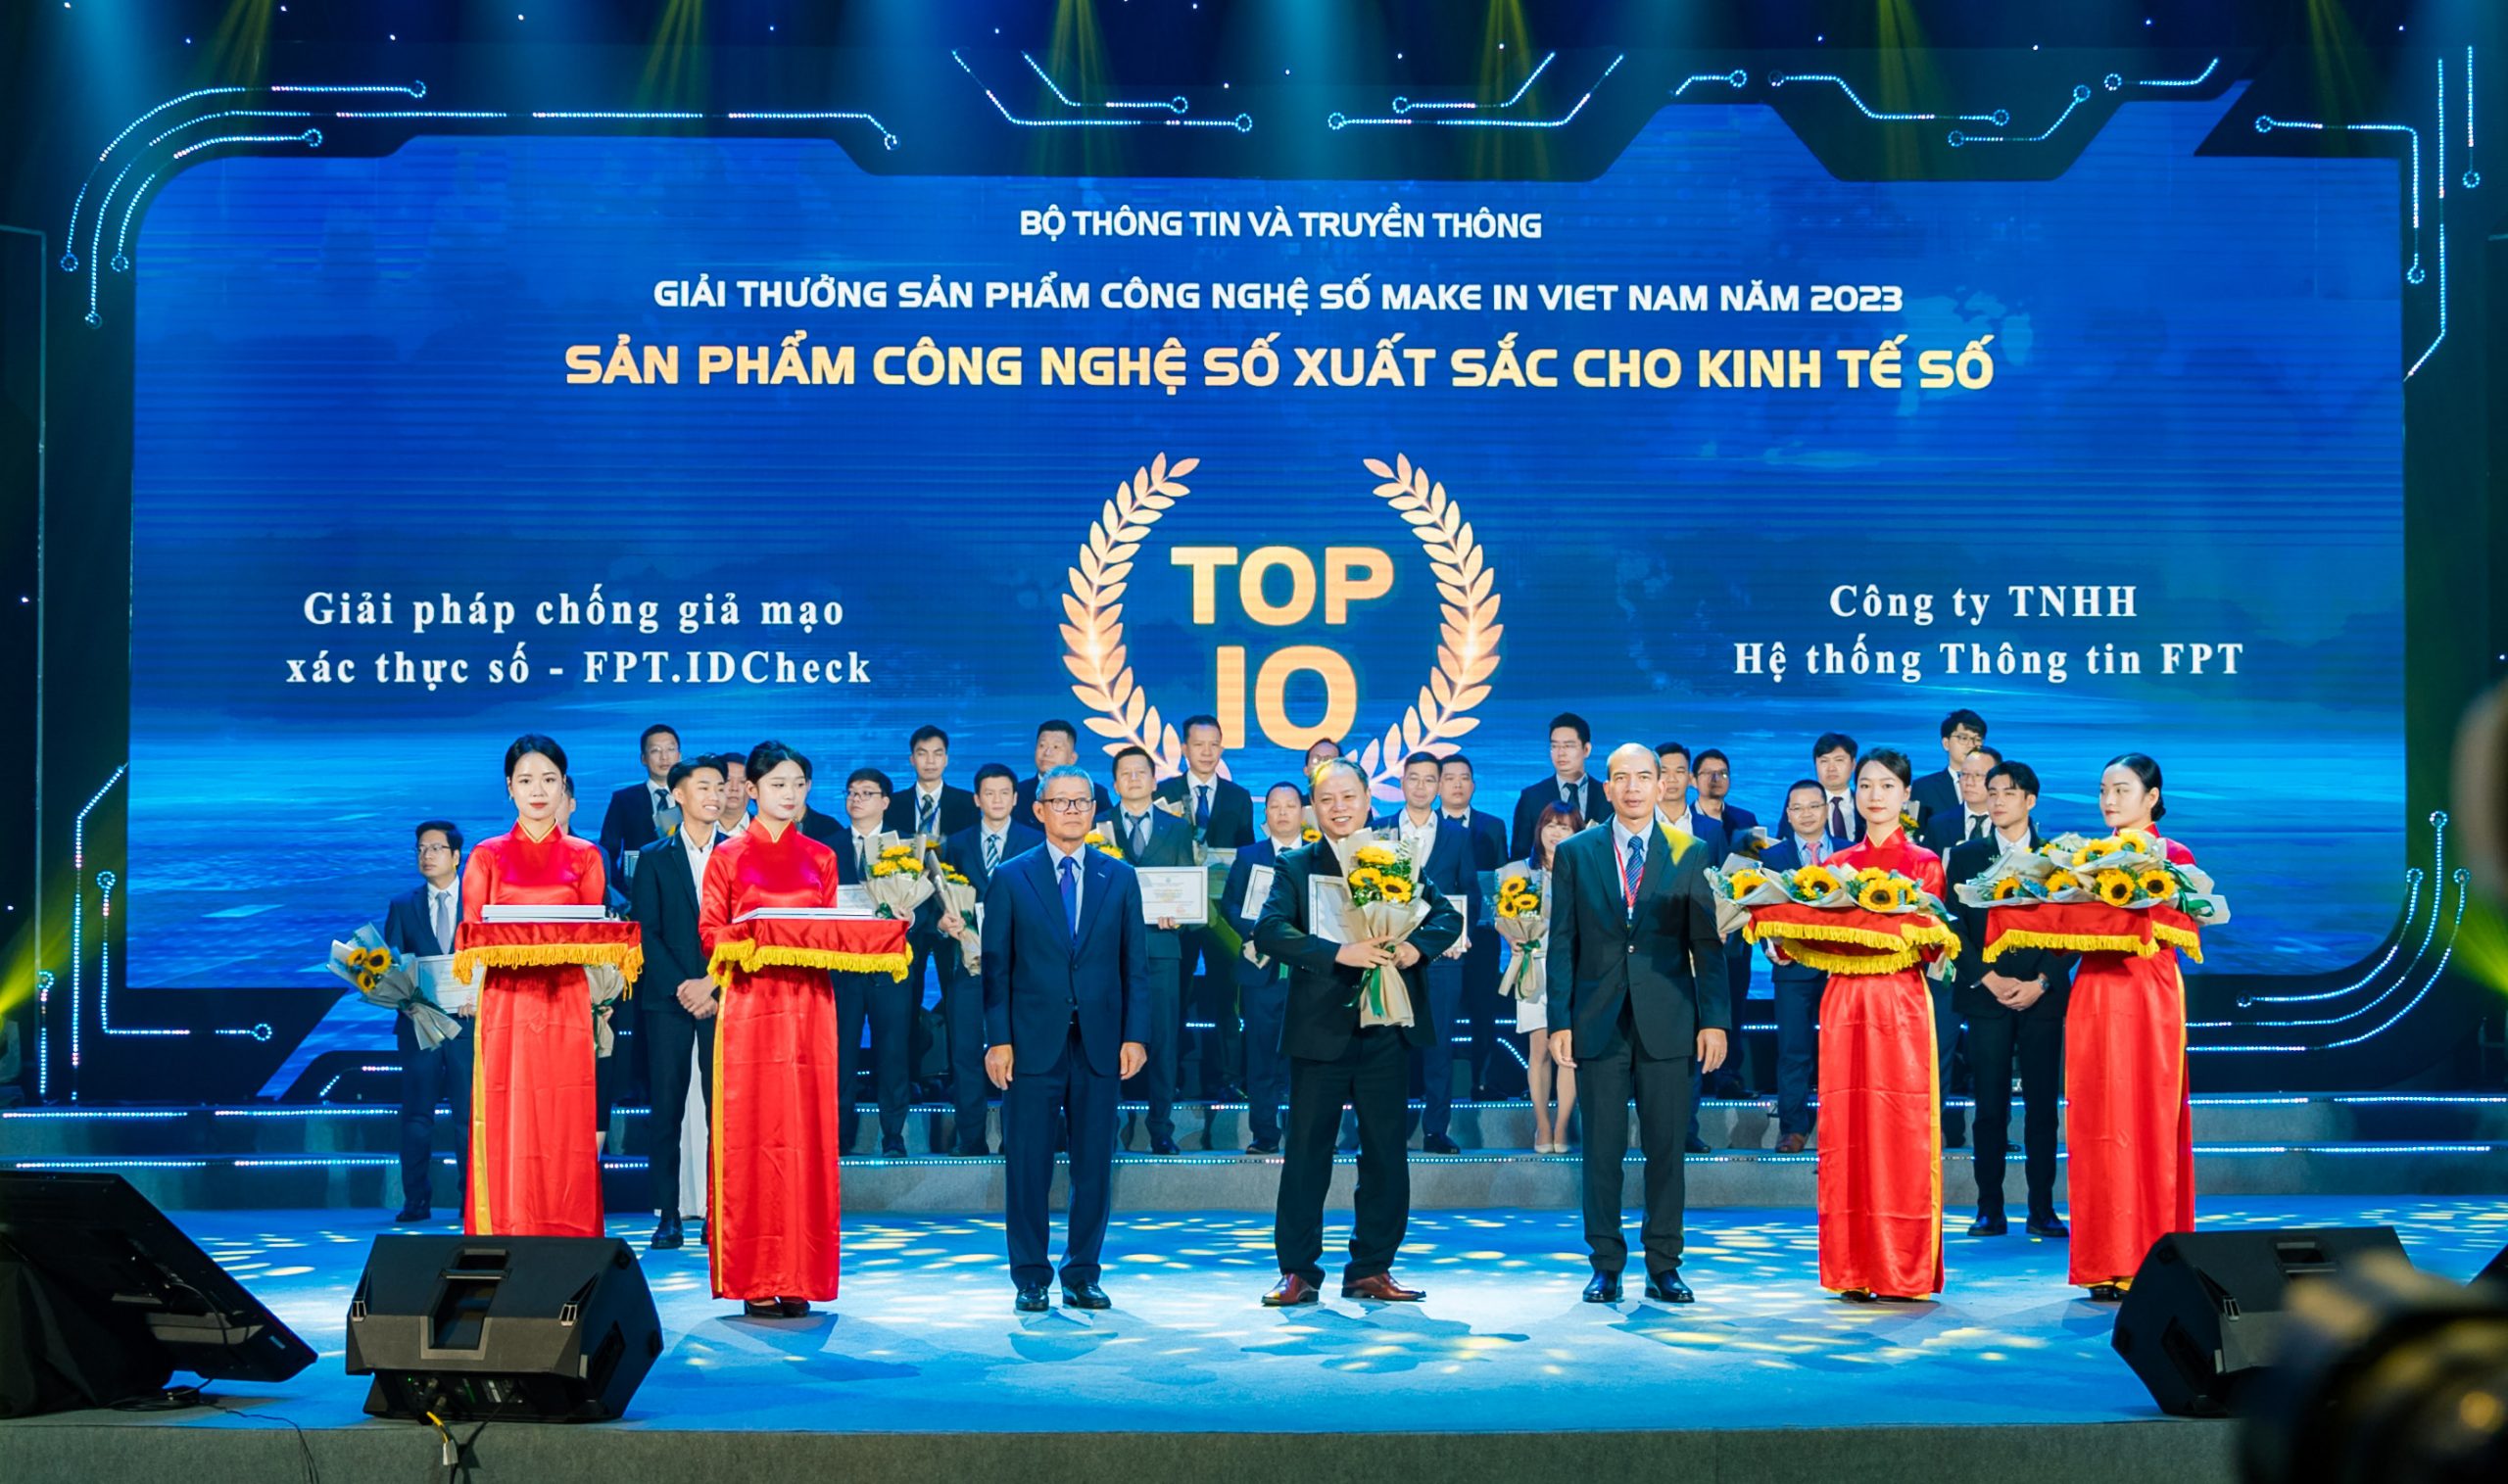 Giải pháp chống giả mạo xác thực số – FPT.IDCheck đạt Top 10 Sản phẩm công nghệ số xuất sắc cho Kinh tế số – Giải thưởng Sản phẩm công nghệ số Make in Viet Nam 2023